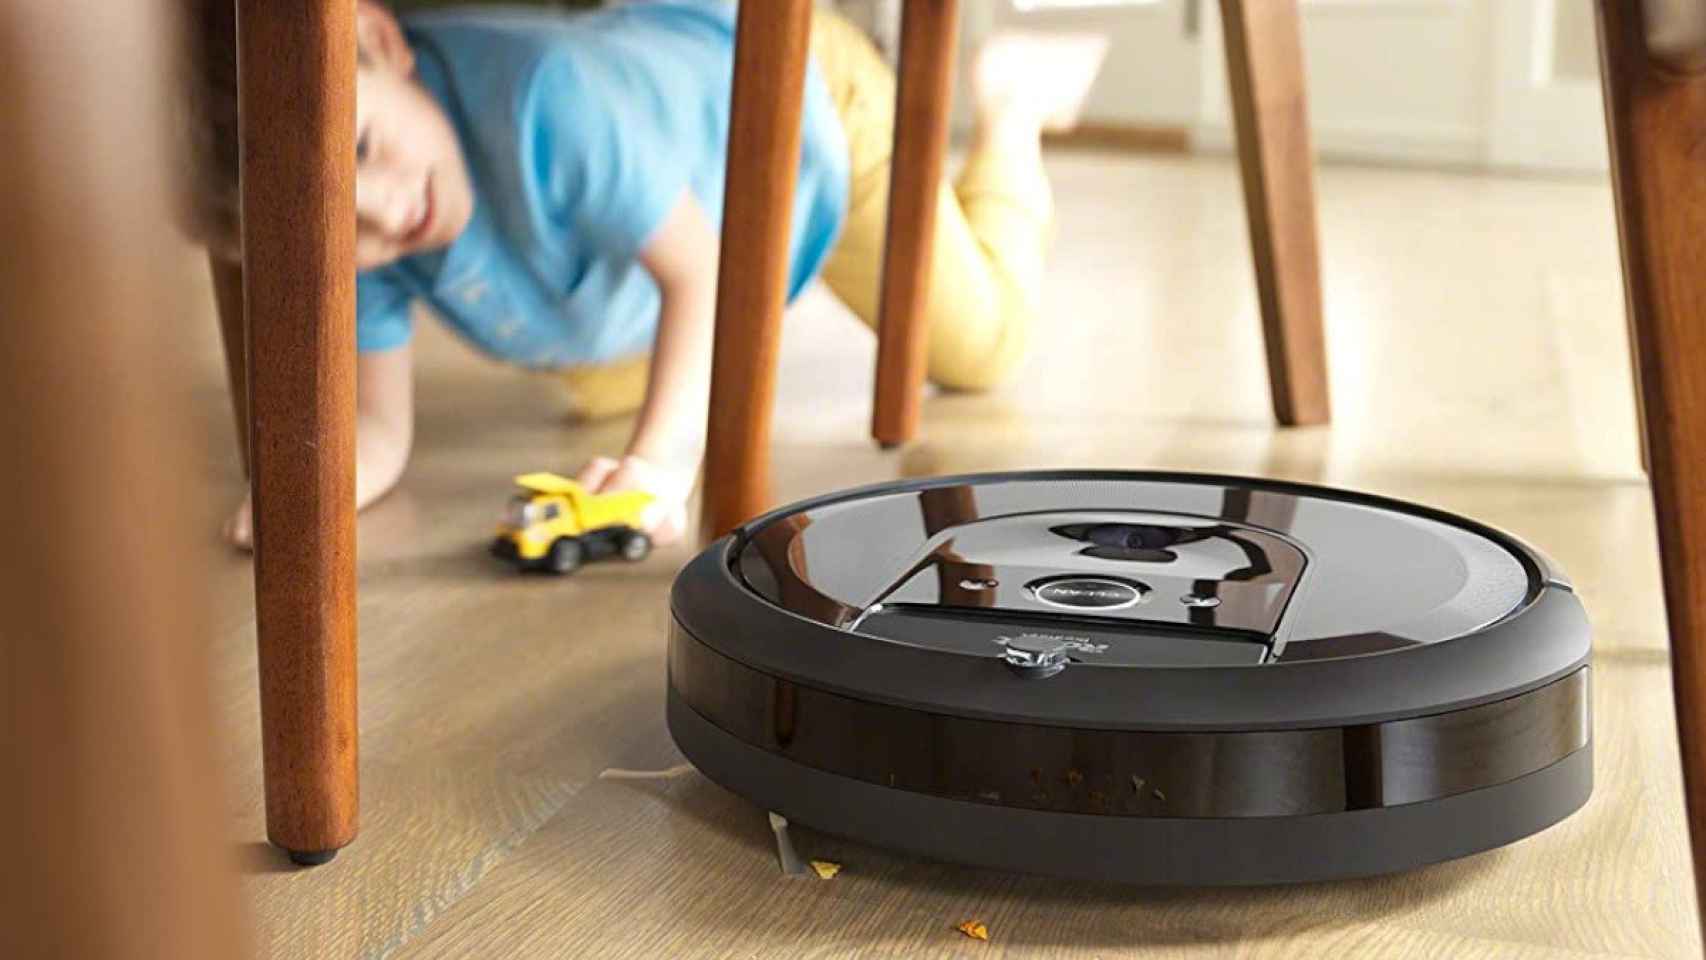 Ofertón! El robot aspirador Roomba con depósito de autovaciado a mitad de  precio